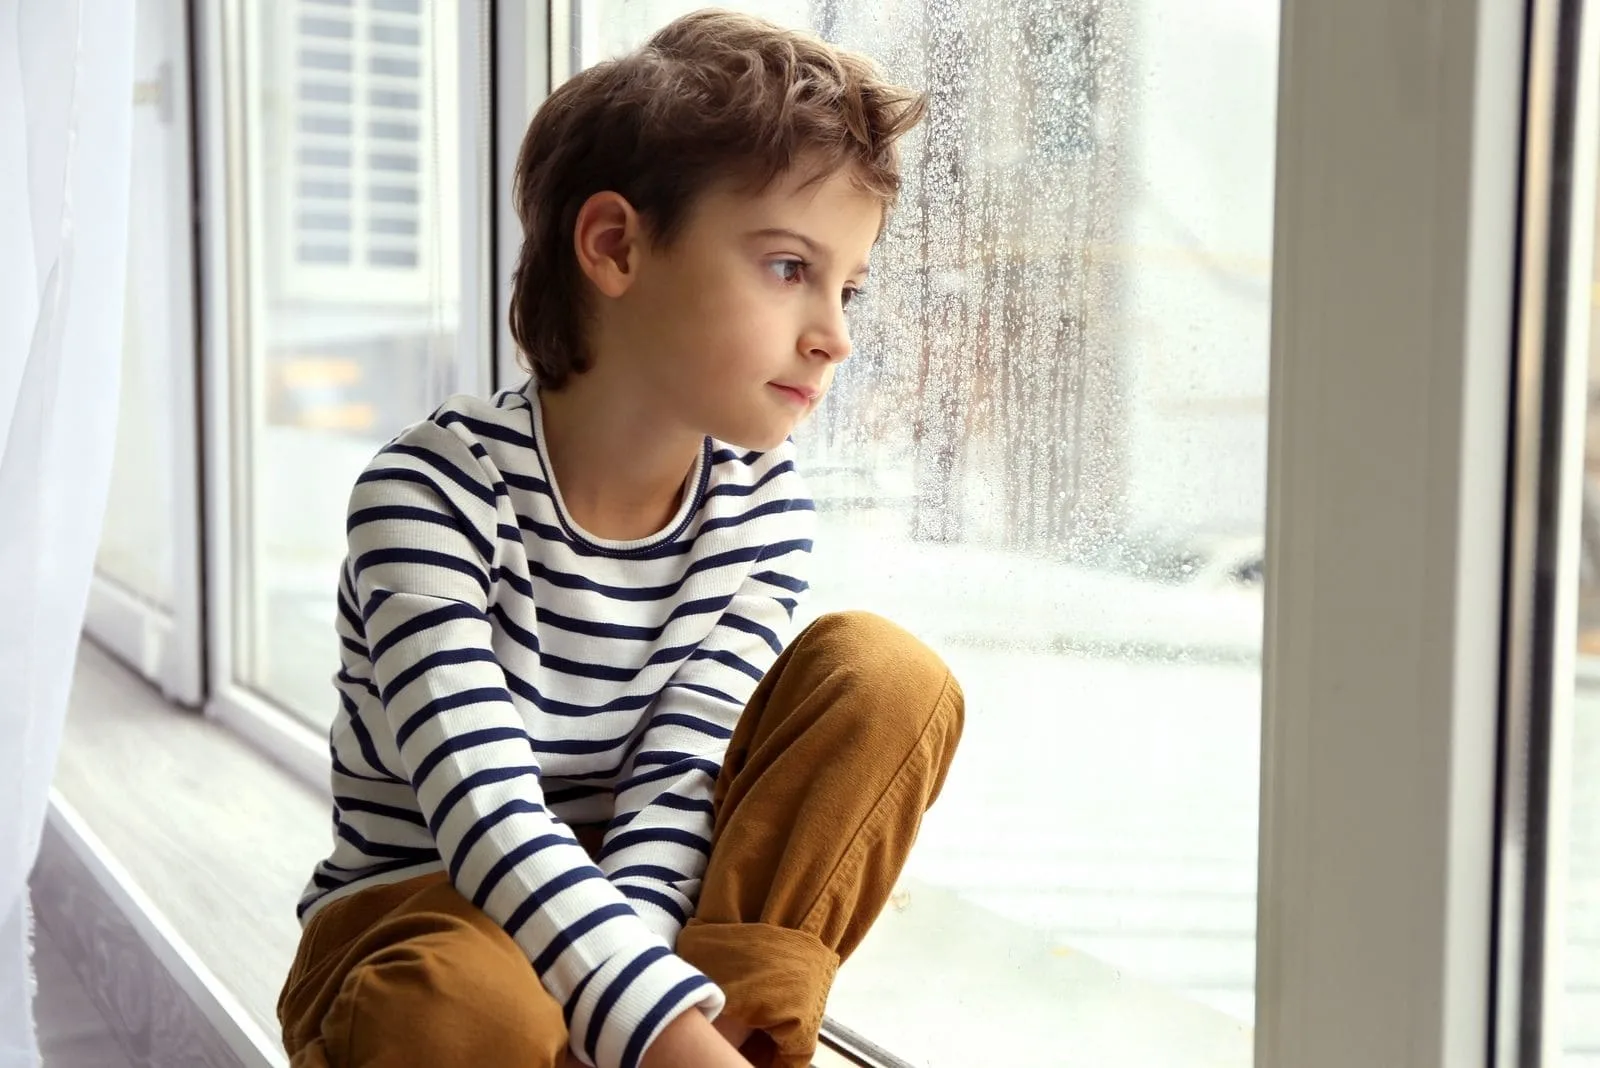 cute little boy sitting by the window sill looking outside